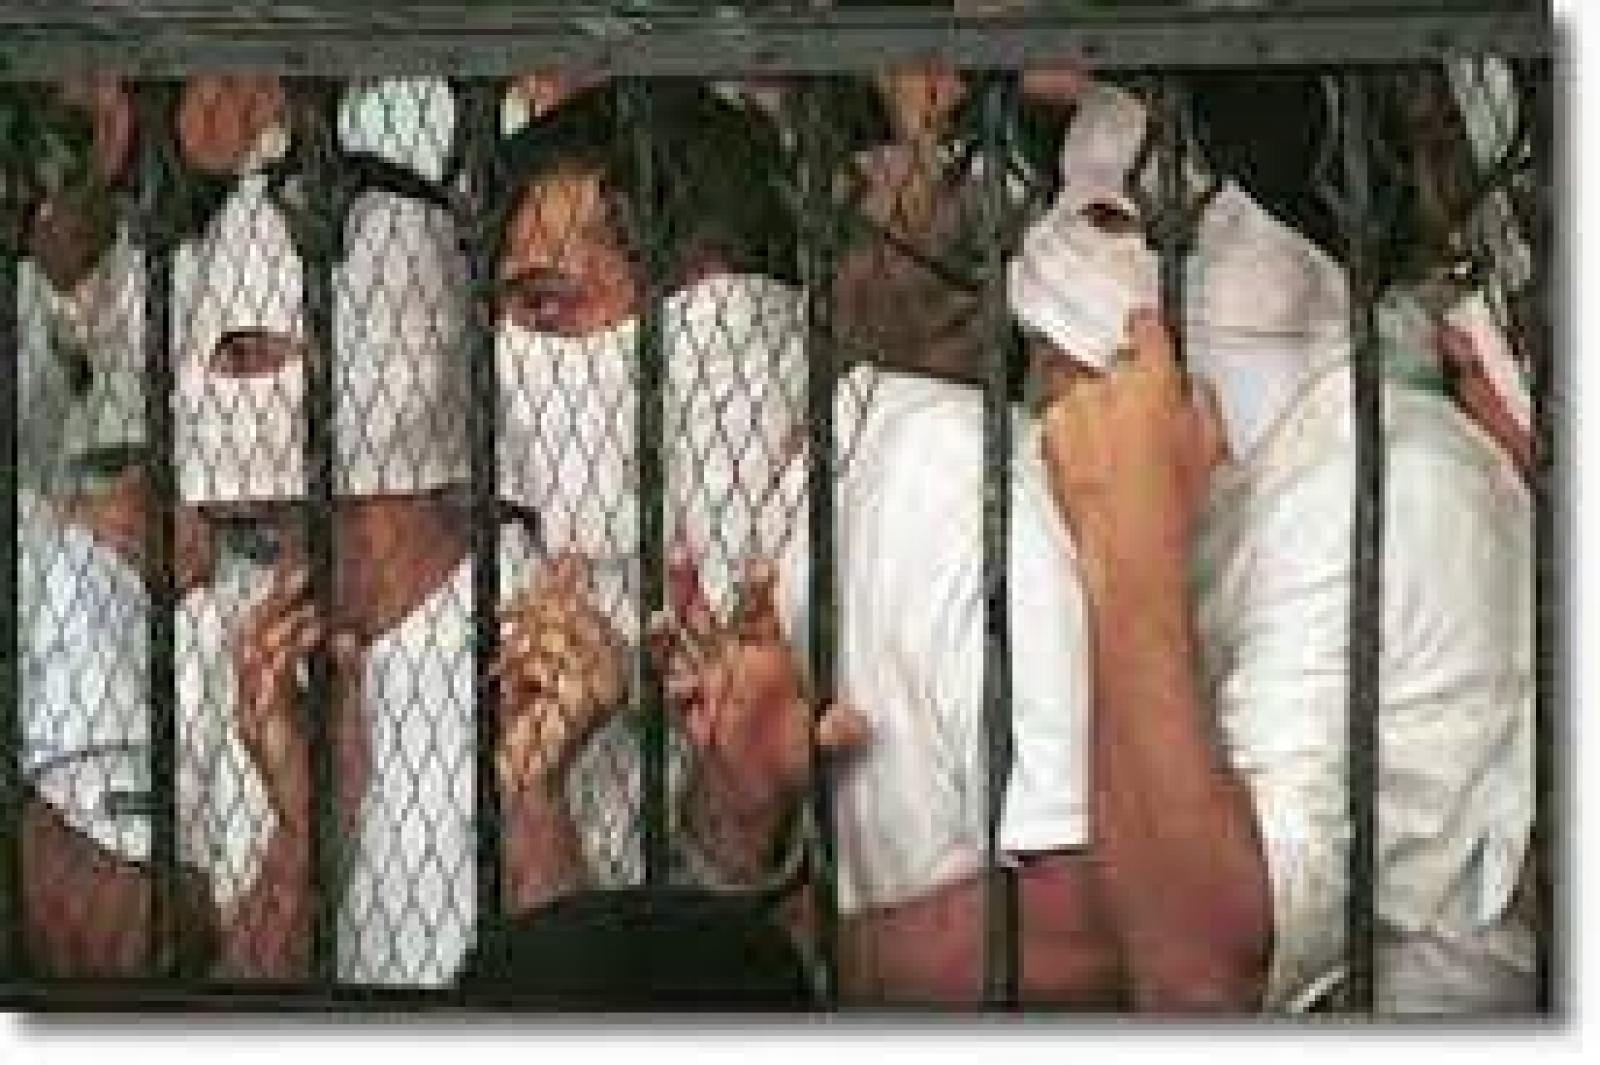 المدعى عليهم في محاكمة كوين بوت ينتظرون في المحكمة حتى يُقرأ الحكم ، القاهرة ، 14 نوفمبر / تشرين الثاني 2011: تصوير نوربرت شيلر